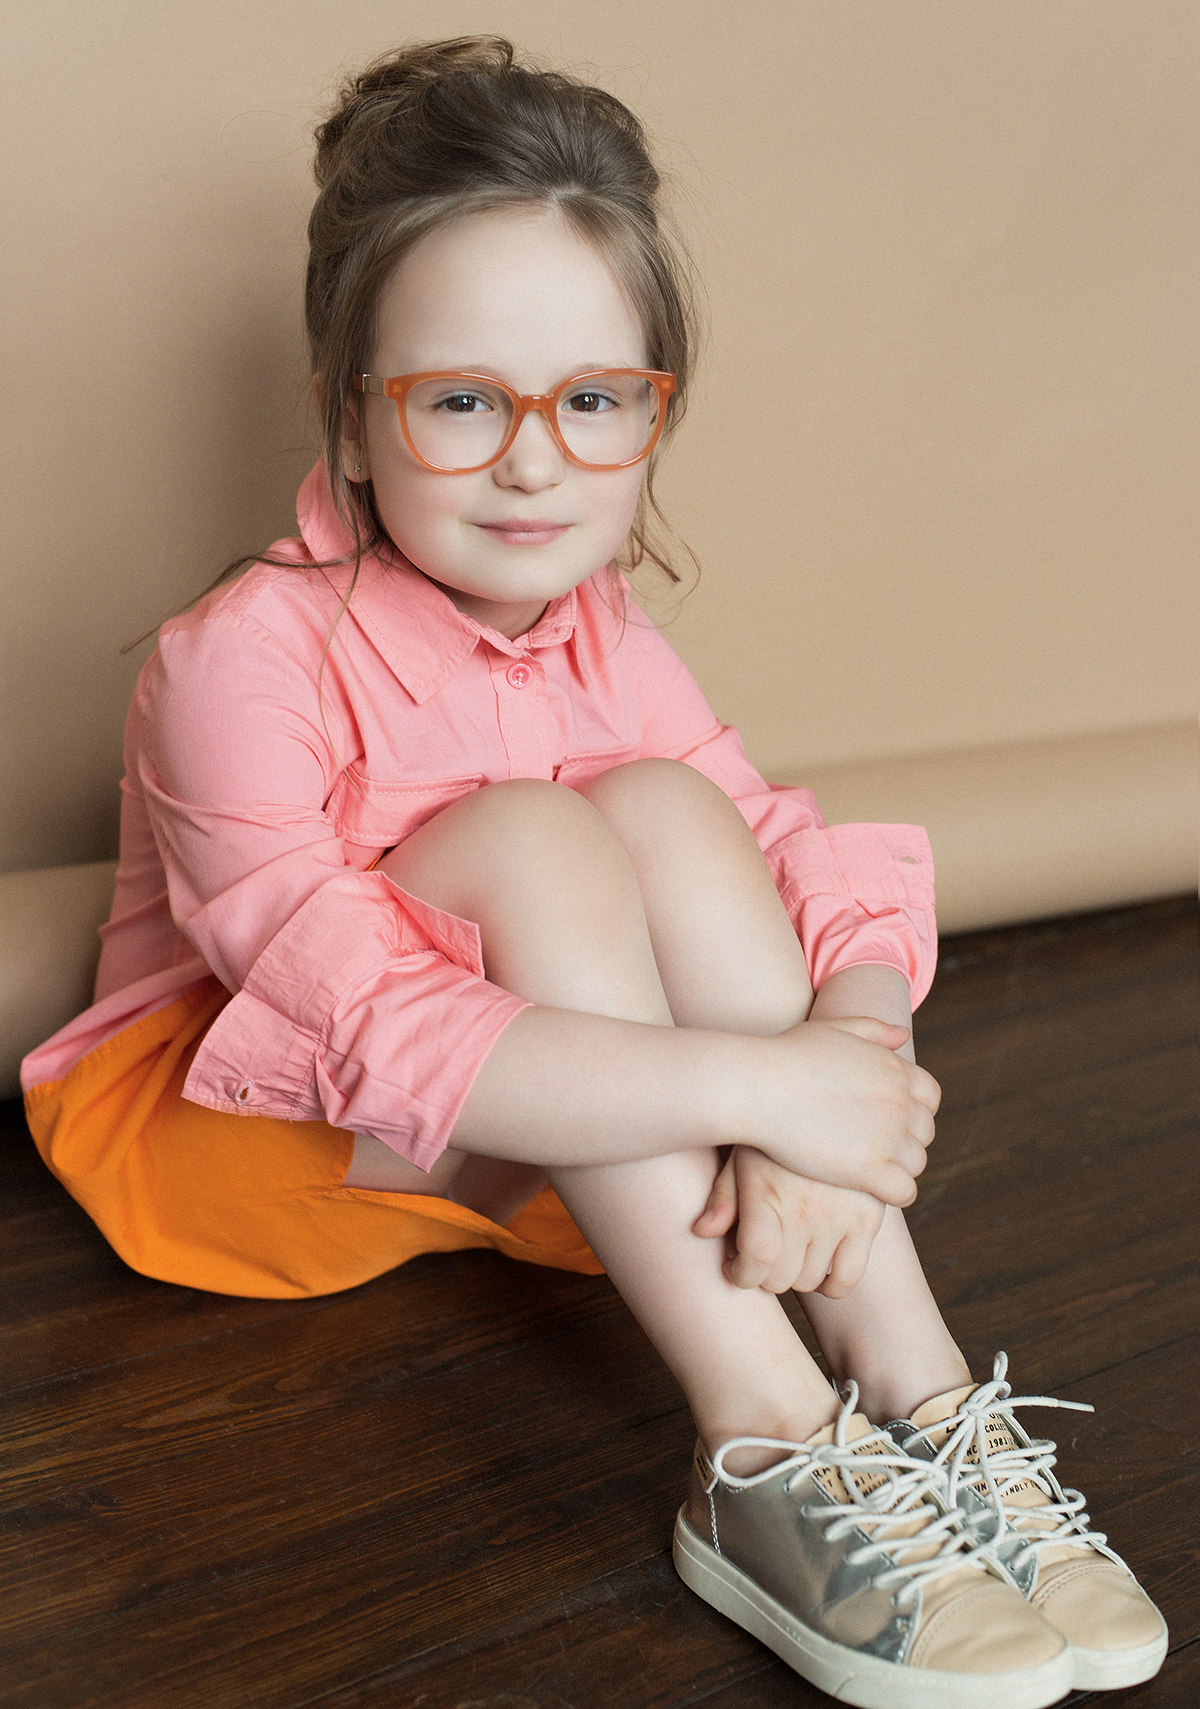 стилист Минск старовойтова майя оправы детские оправы очки для детей minsk belarus stylist styling 